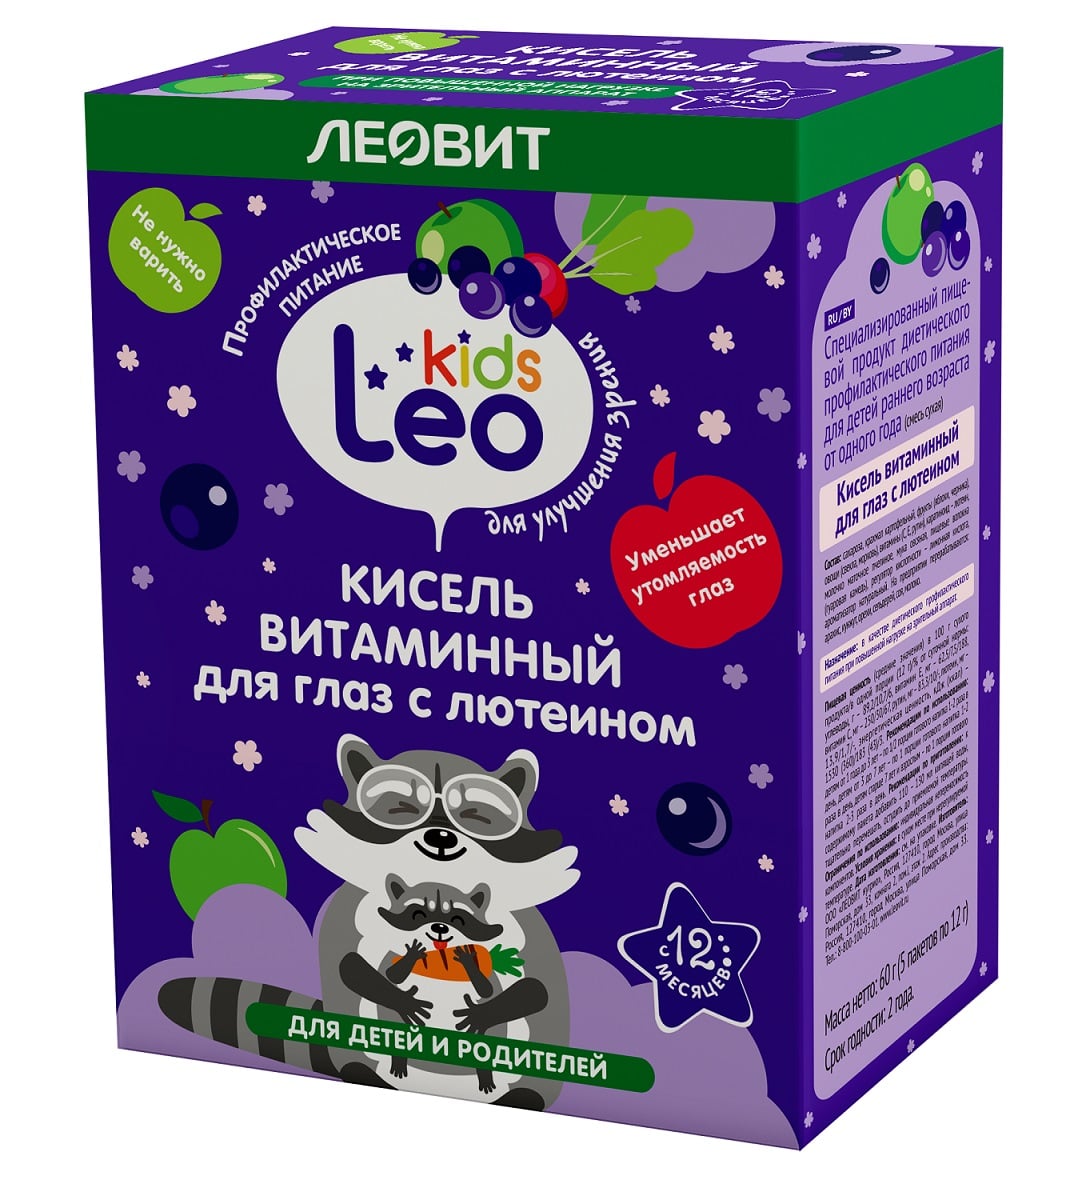 Леовит Кисель витаминный для глаз с лютеином для детей, 5 пакетов х 12 г (Леовит, Leo Kids) фото 0